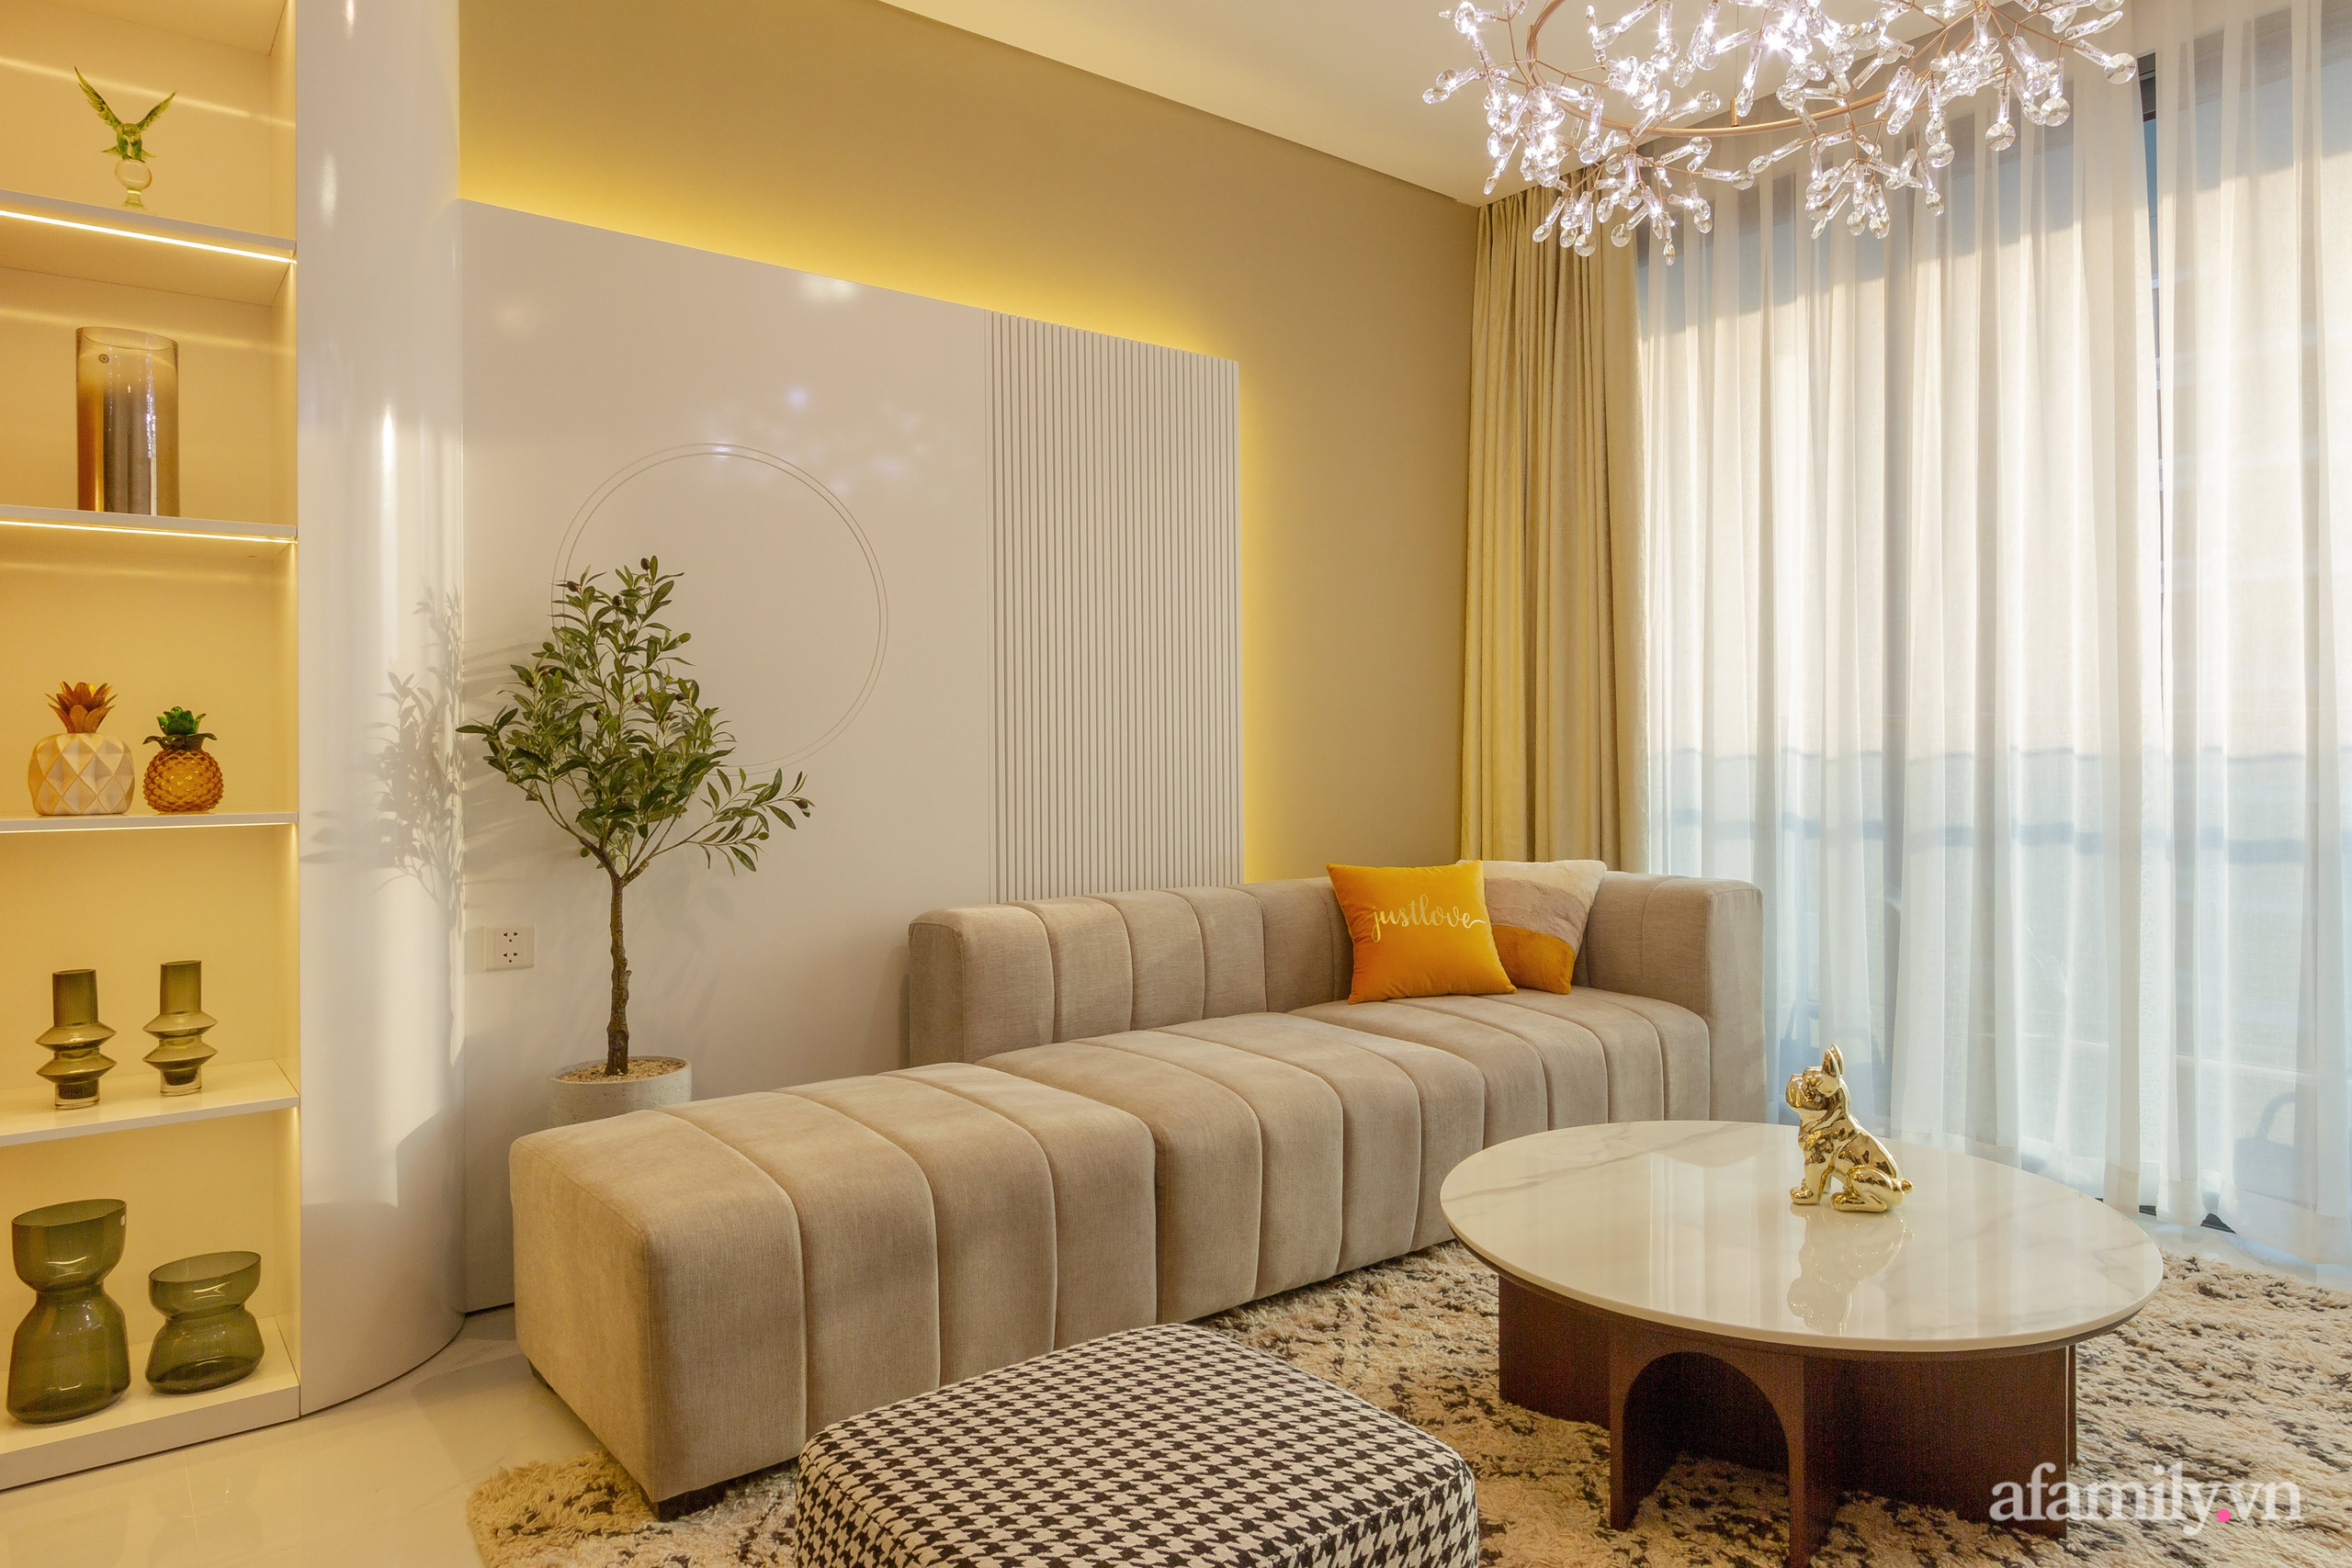 Căn hộ 120m² đẹp tinh tế với sắc màu mùa xuân với chi phí hoàn thiện 750 triệu đồng ở Sài Gòn - Ảnh 4.